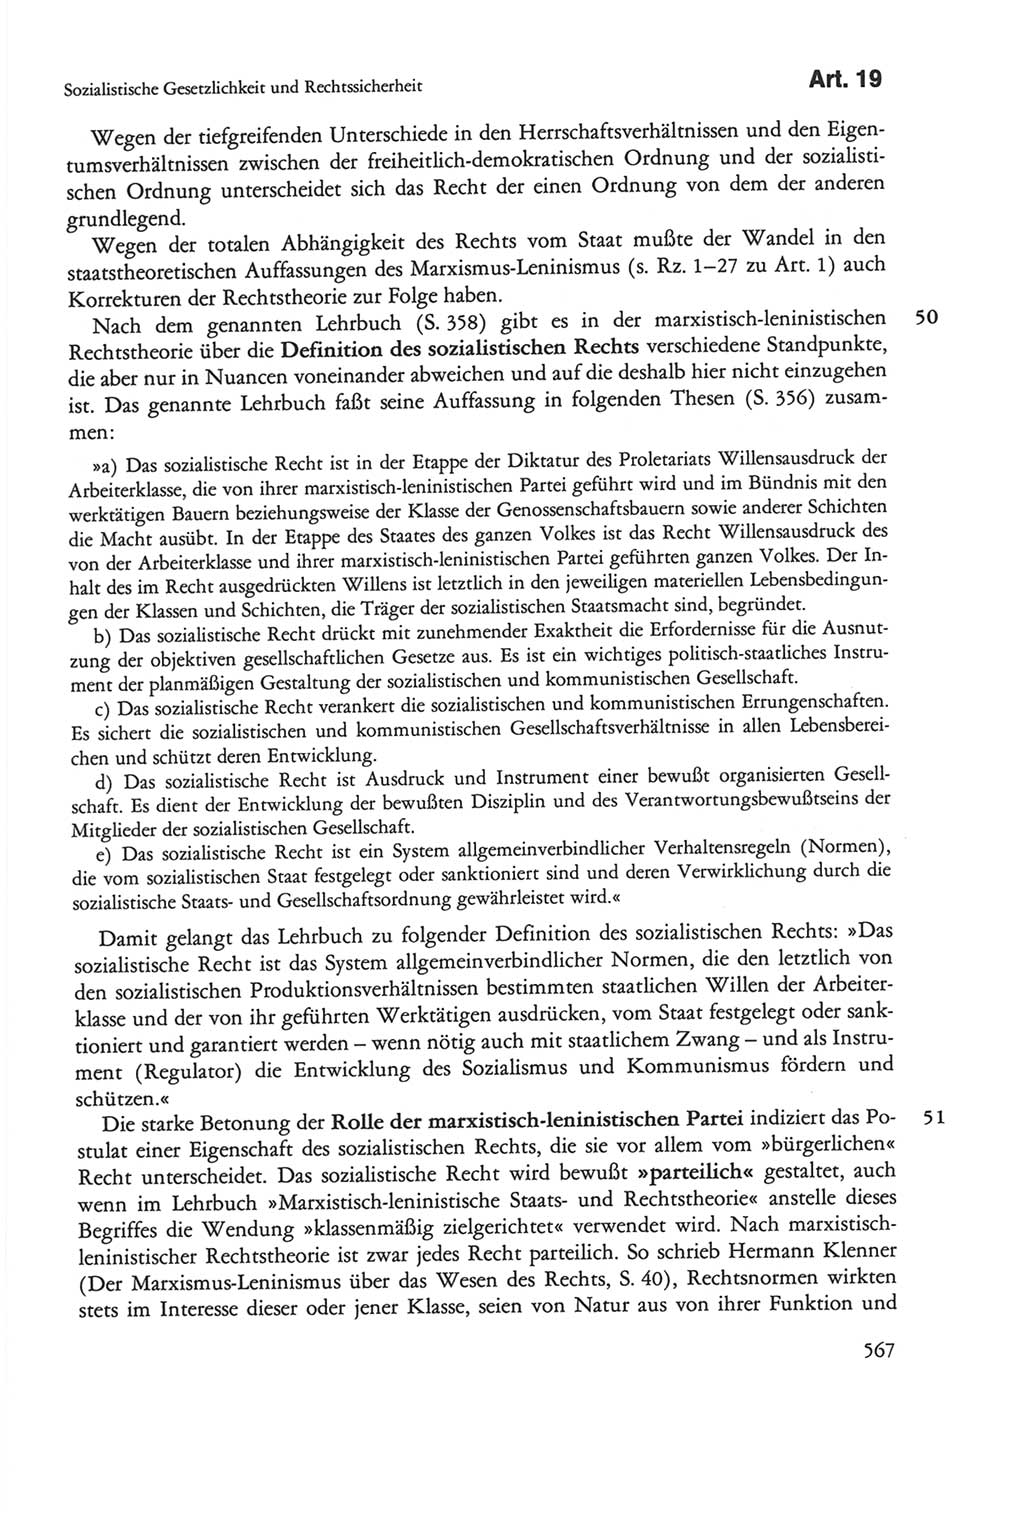 Die sozialistische Verfassung der Deutschen Demokratischen Republik (DDR), Kommentar 1982, Seite 567 (Soz. Verf. DDR Komm. 1982, S. 567)